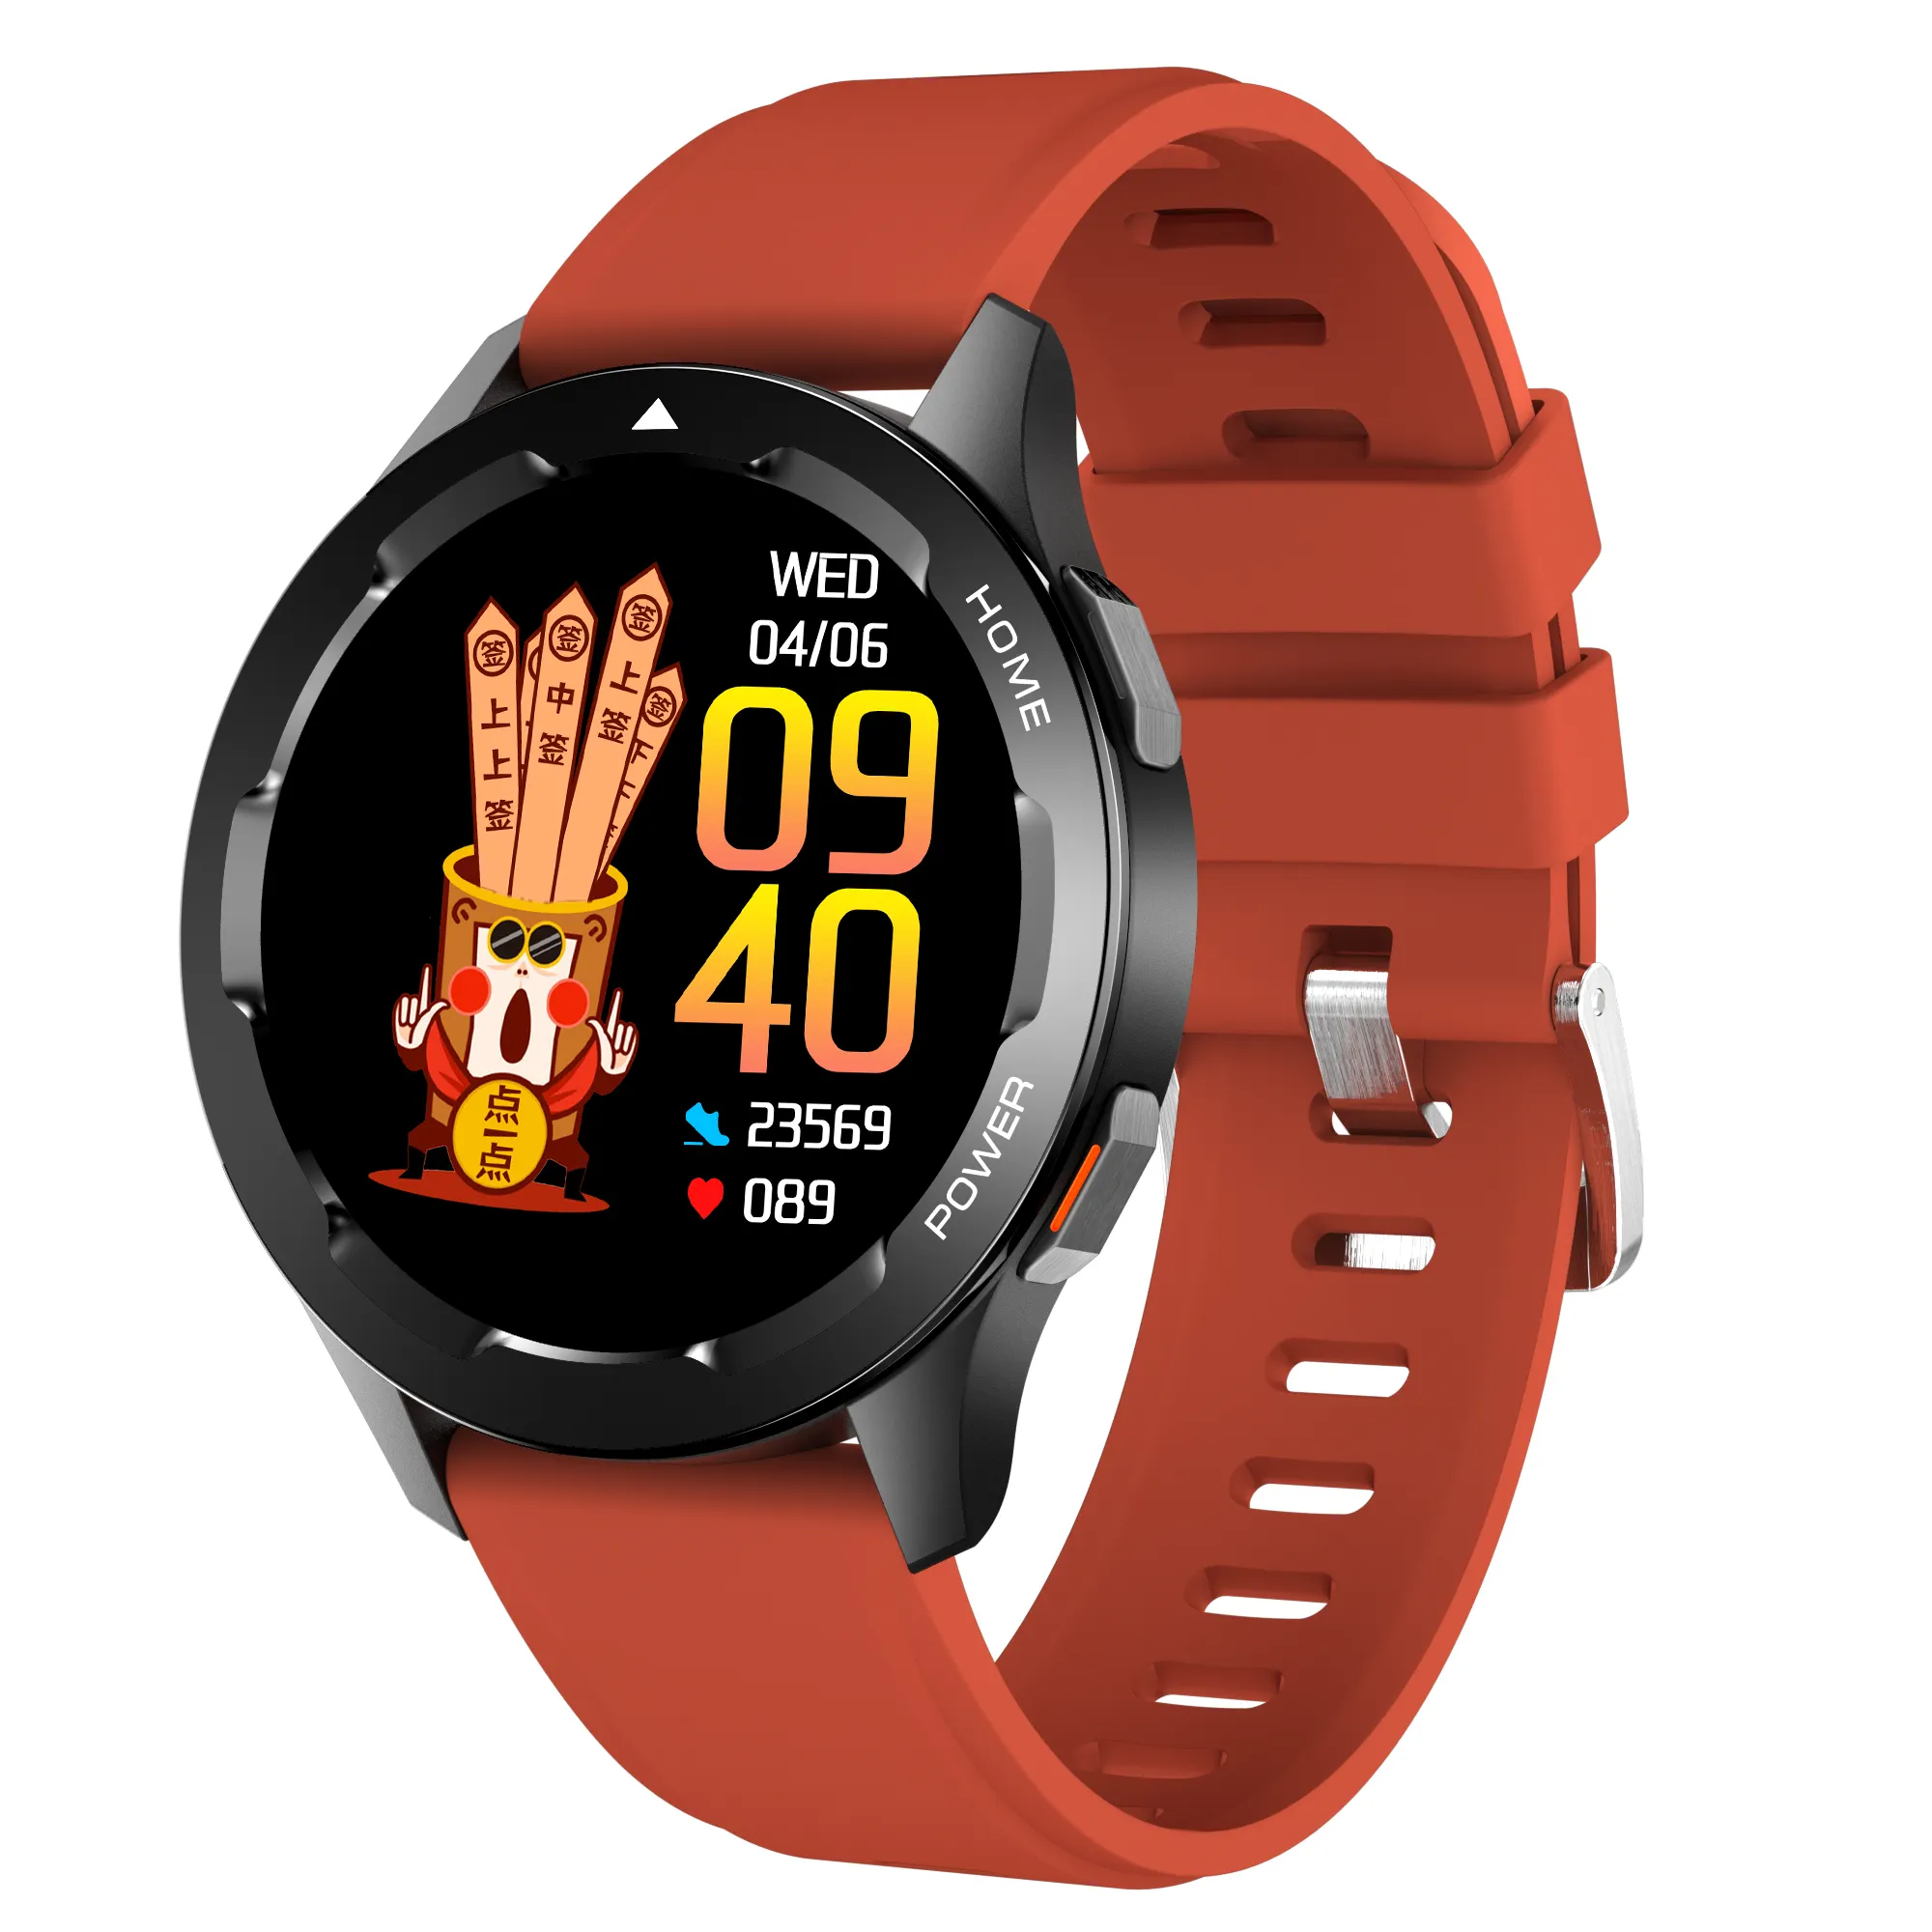 Kyboton Smartwatch 300Mah Batería de larga duración NFC BT Llamada IP67 Rastreador de fitness a prueba de agua Medición de temperatura corporal Reloj inteligente